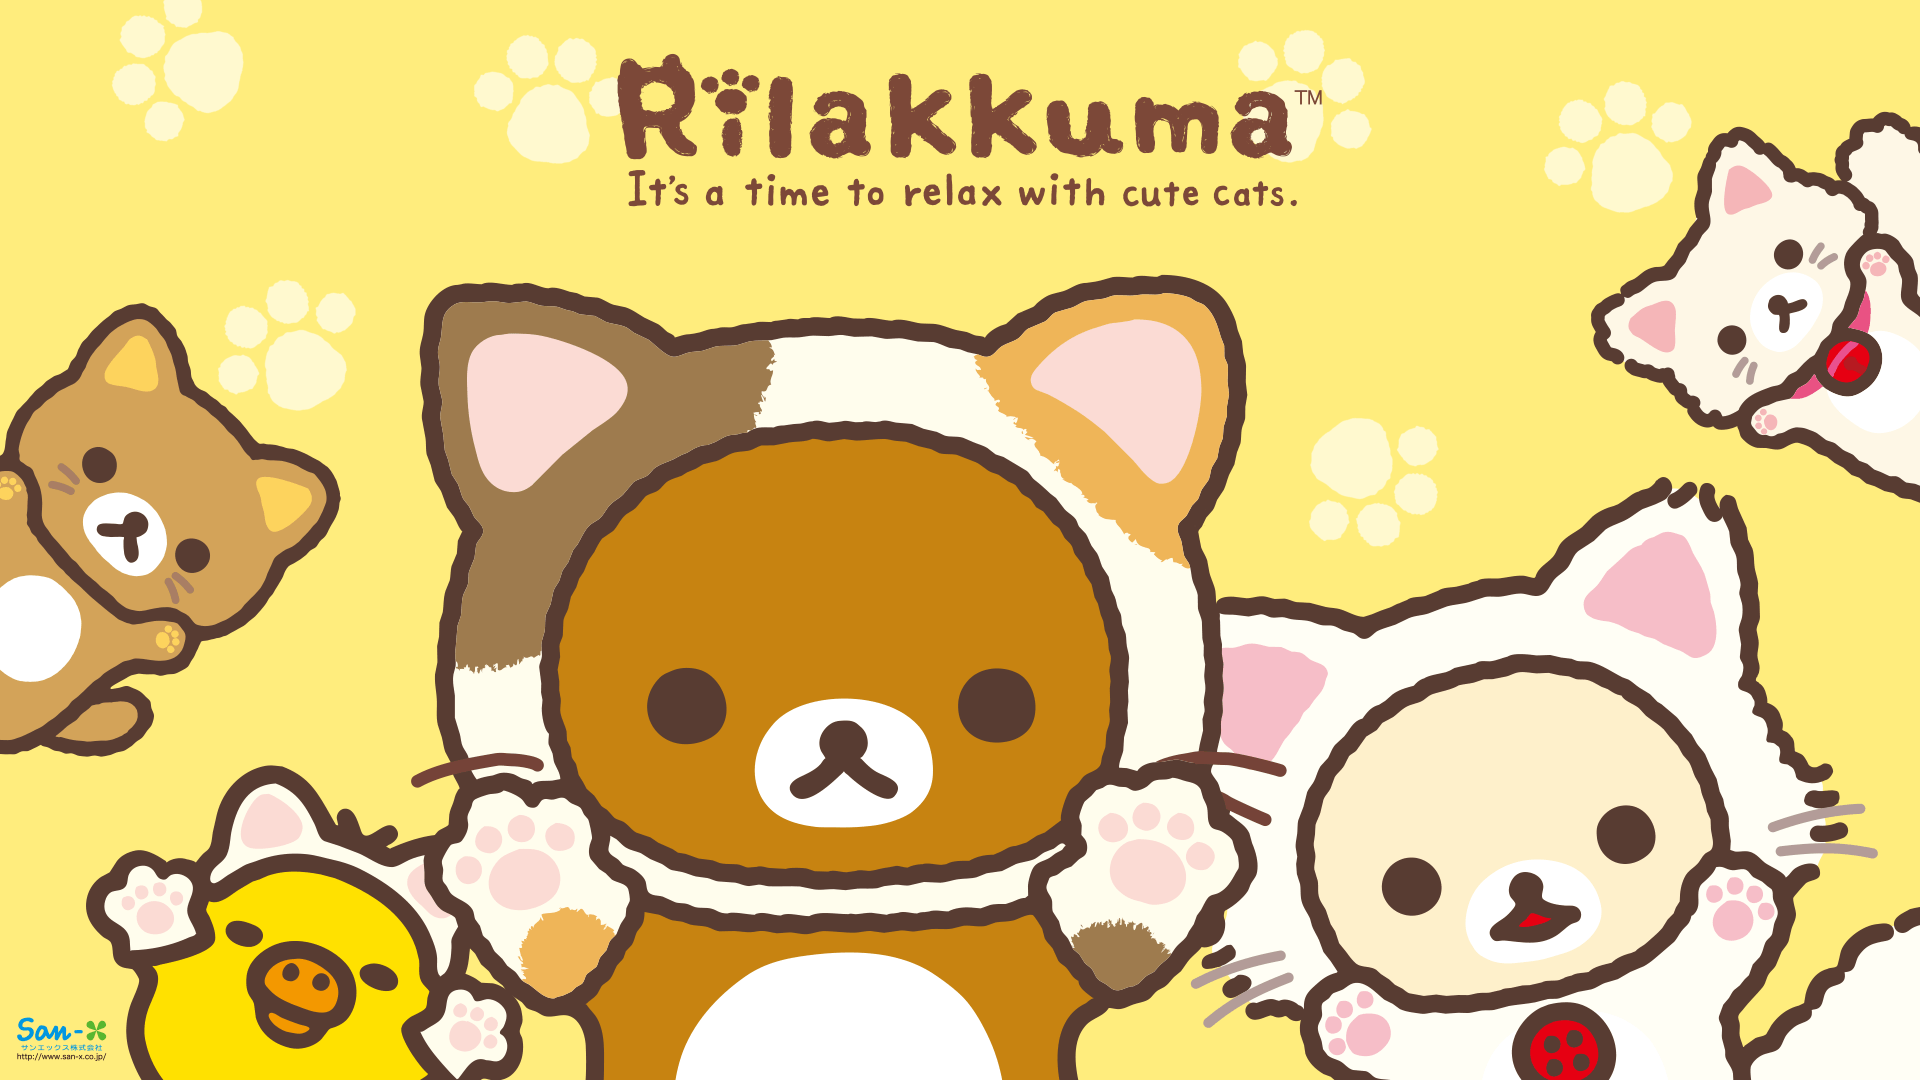 Hình nền Rilakkuma đáng yêu sẽ đưa bạn đến một thế giới êm ái, ngọt ngào và đầy niềm vui. Với nền xanh mát, hình ảnh Rilakkuma cùng những vật dụng phụ kiện đáng yêu sẽ làm bạn cảm thấy thư giãn và đầy hứng khởi.